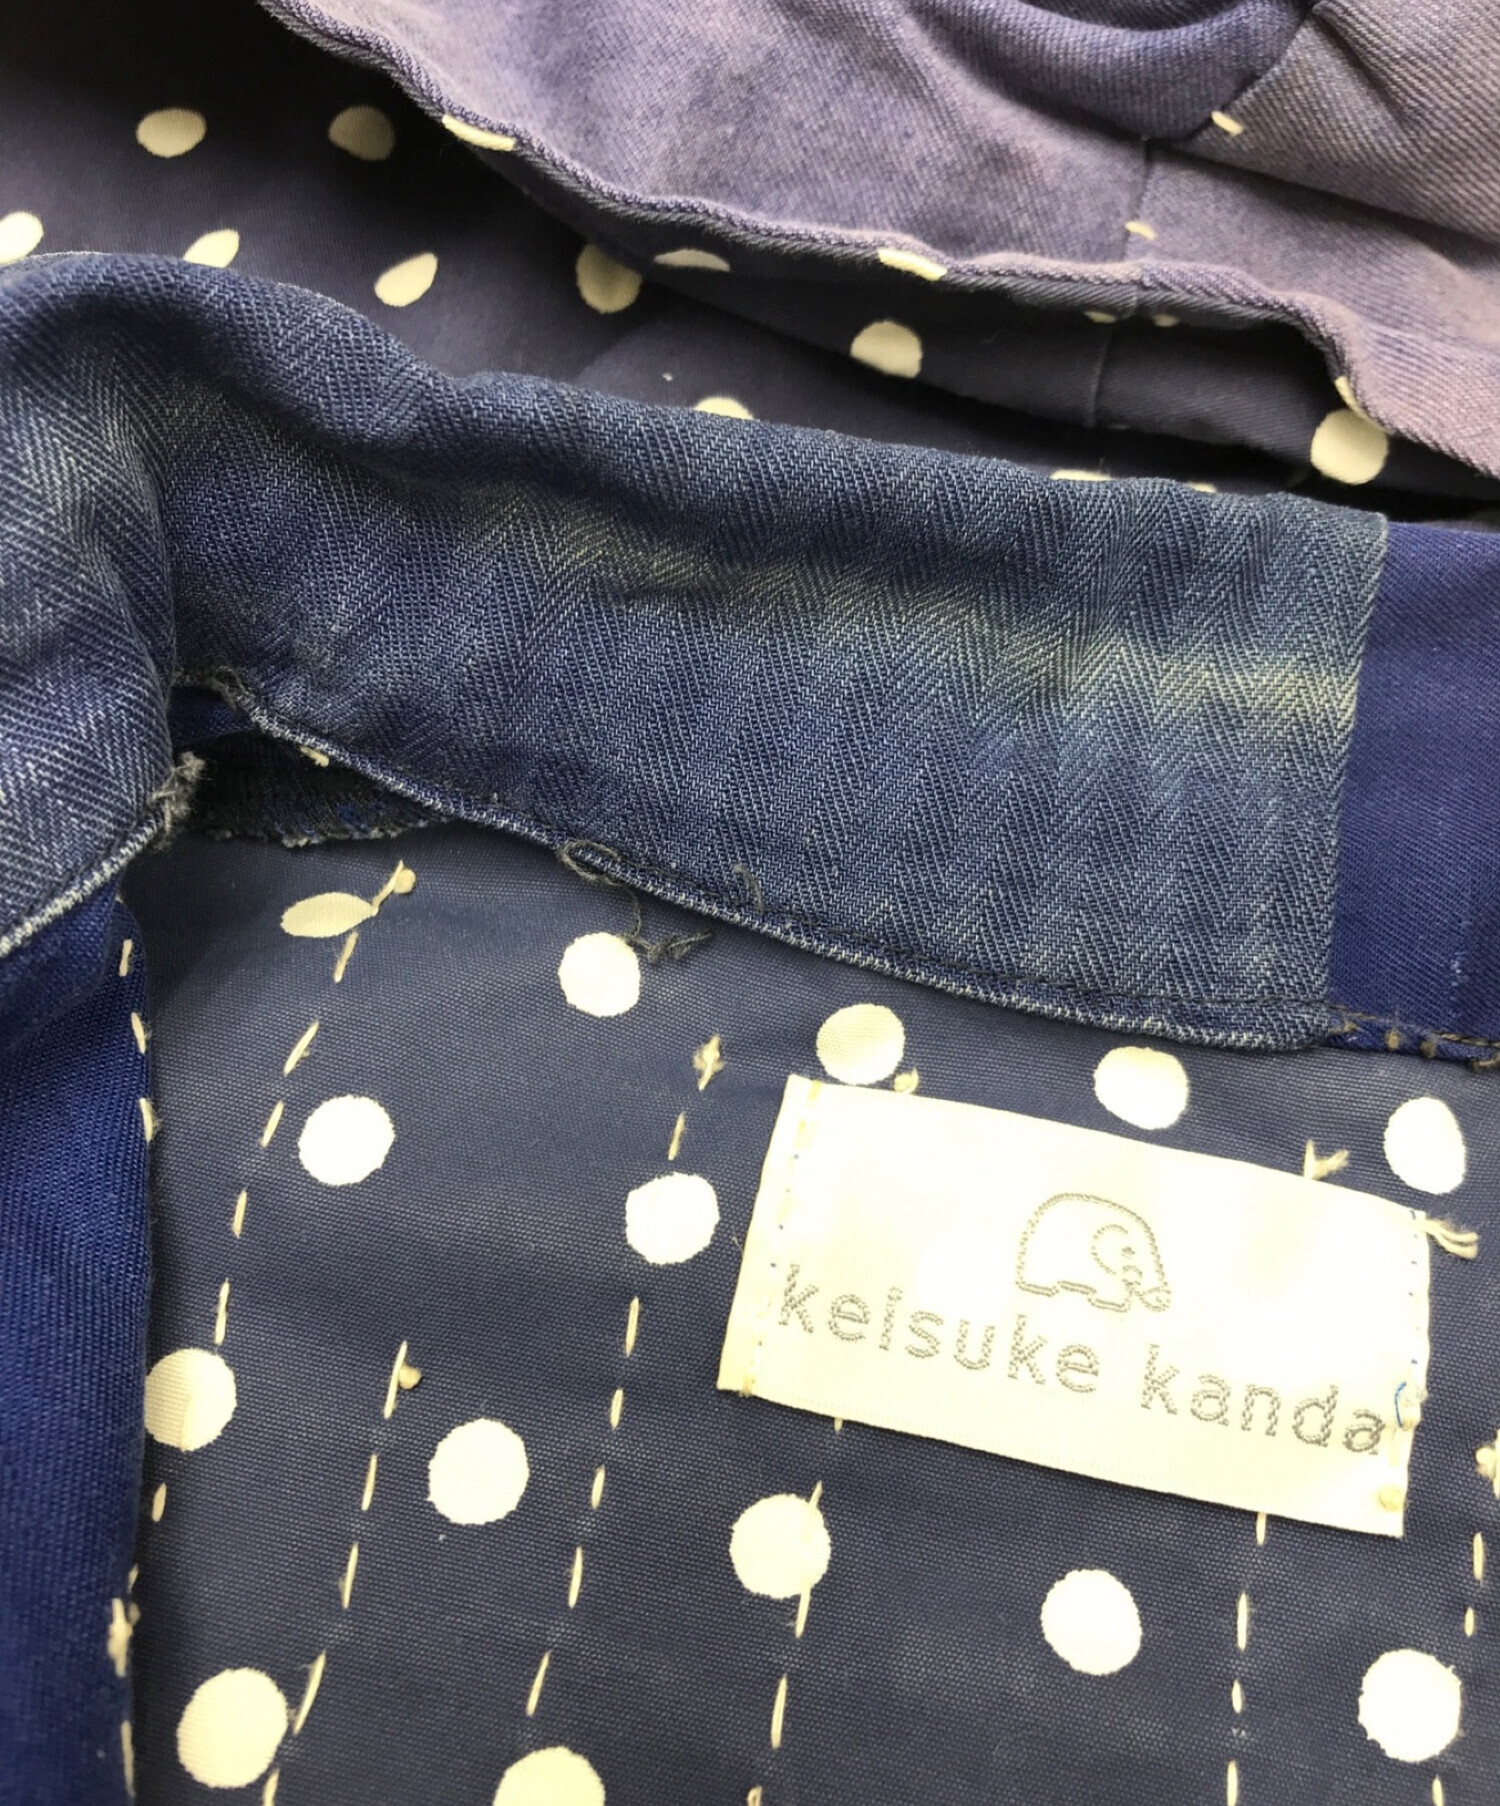 中古・古着通販】keisuke kanda (ケイスケカンダ) 手縫いパッチワーク